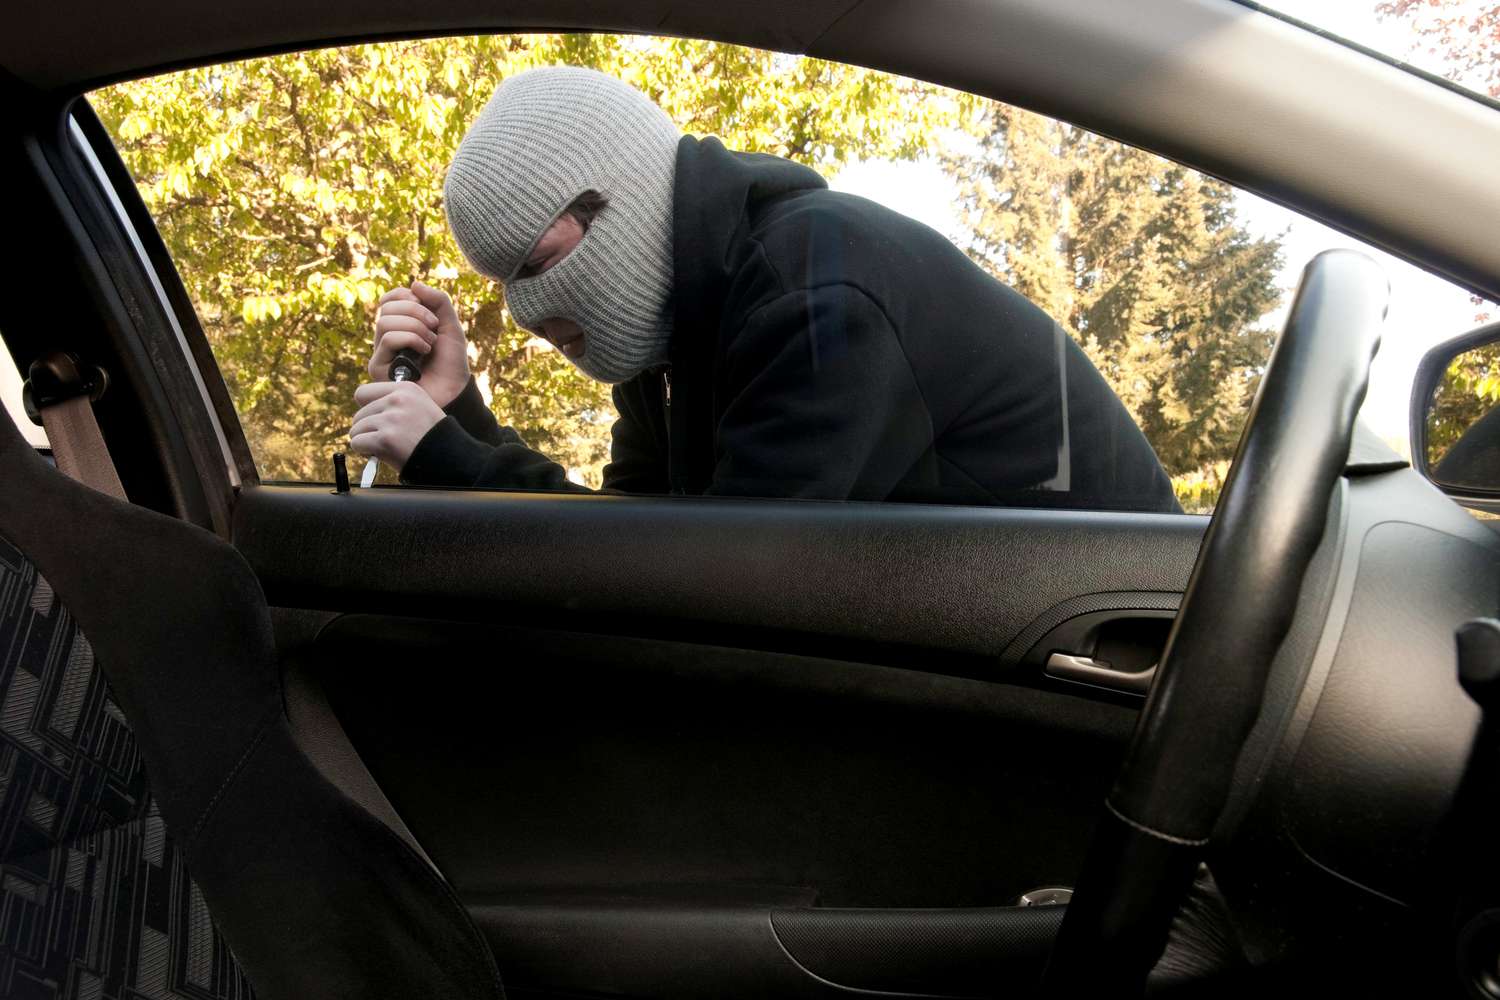 masked teenager breaking into a car 106587699 57b8bdae5f9b58cdfddc4c70 5c82dd8946e0fb00010f10ba